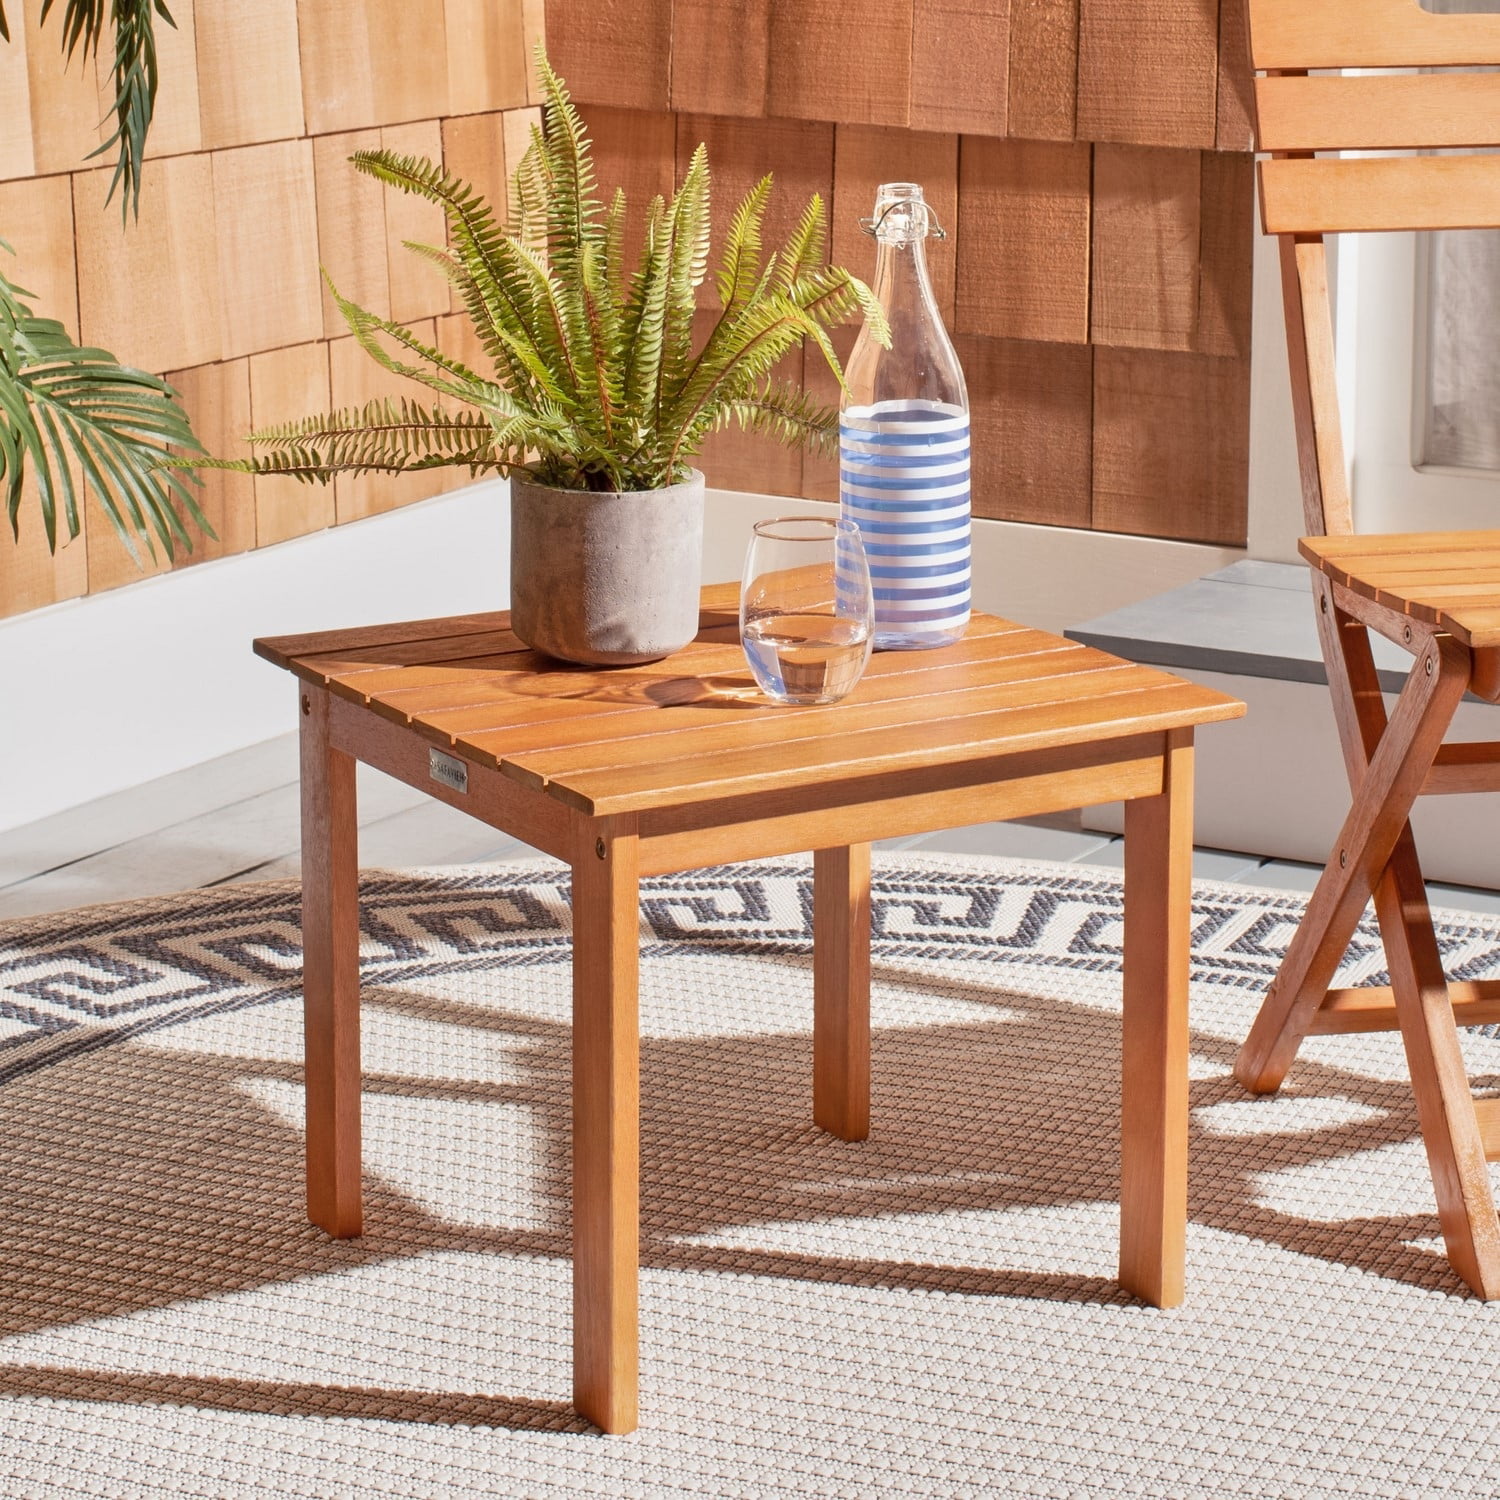 Safavieh Randor Outdoor Patio Folding Table Natural